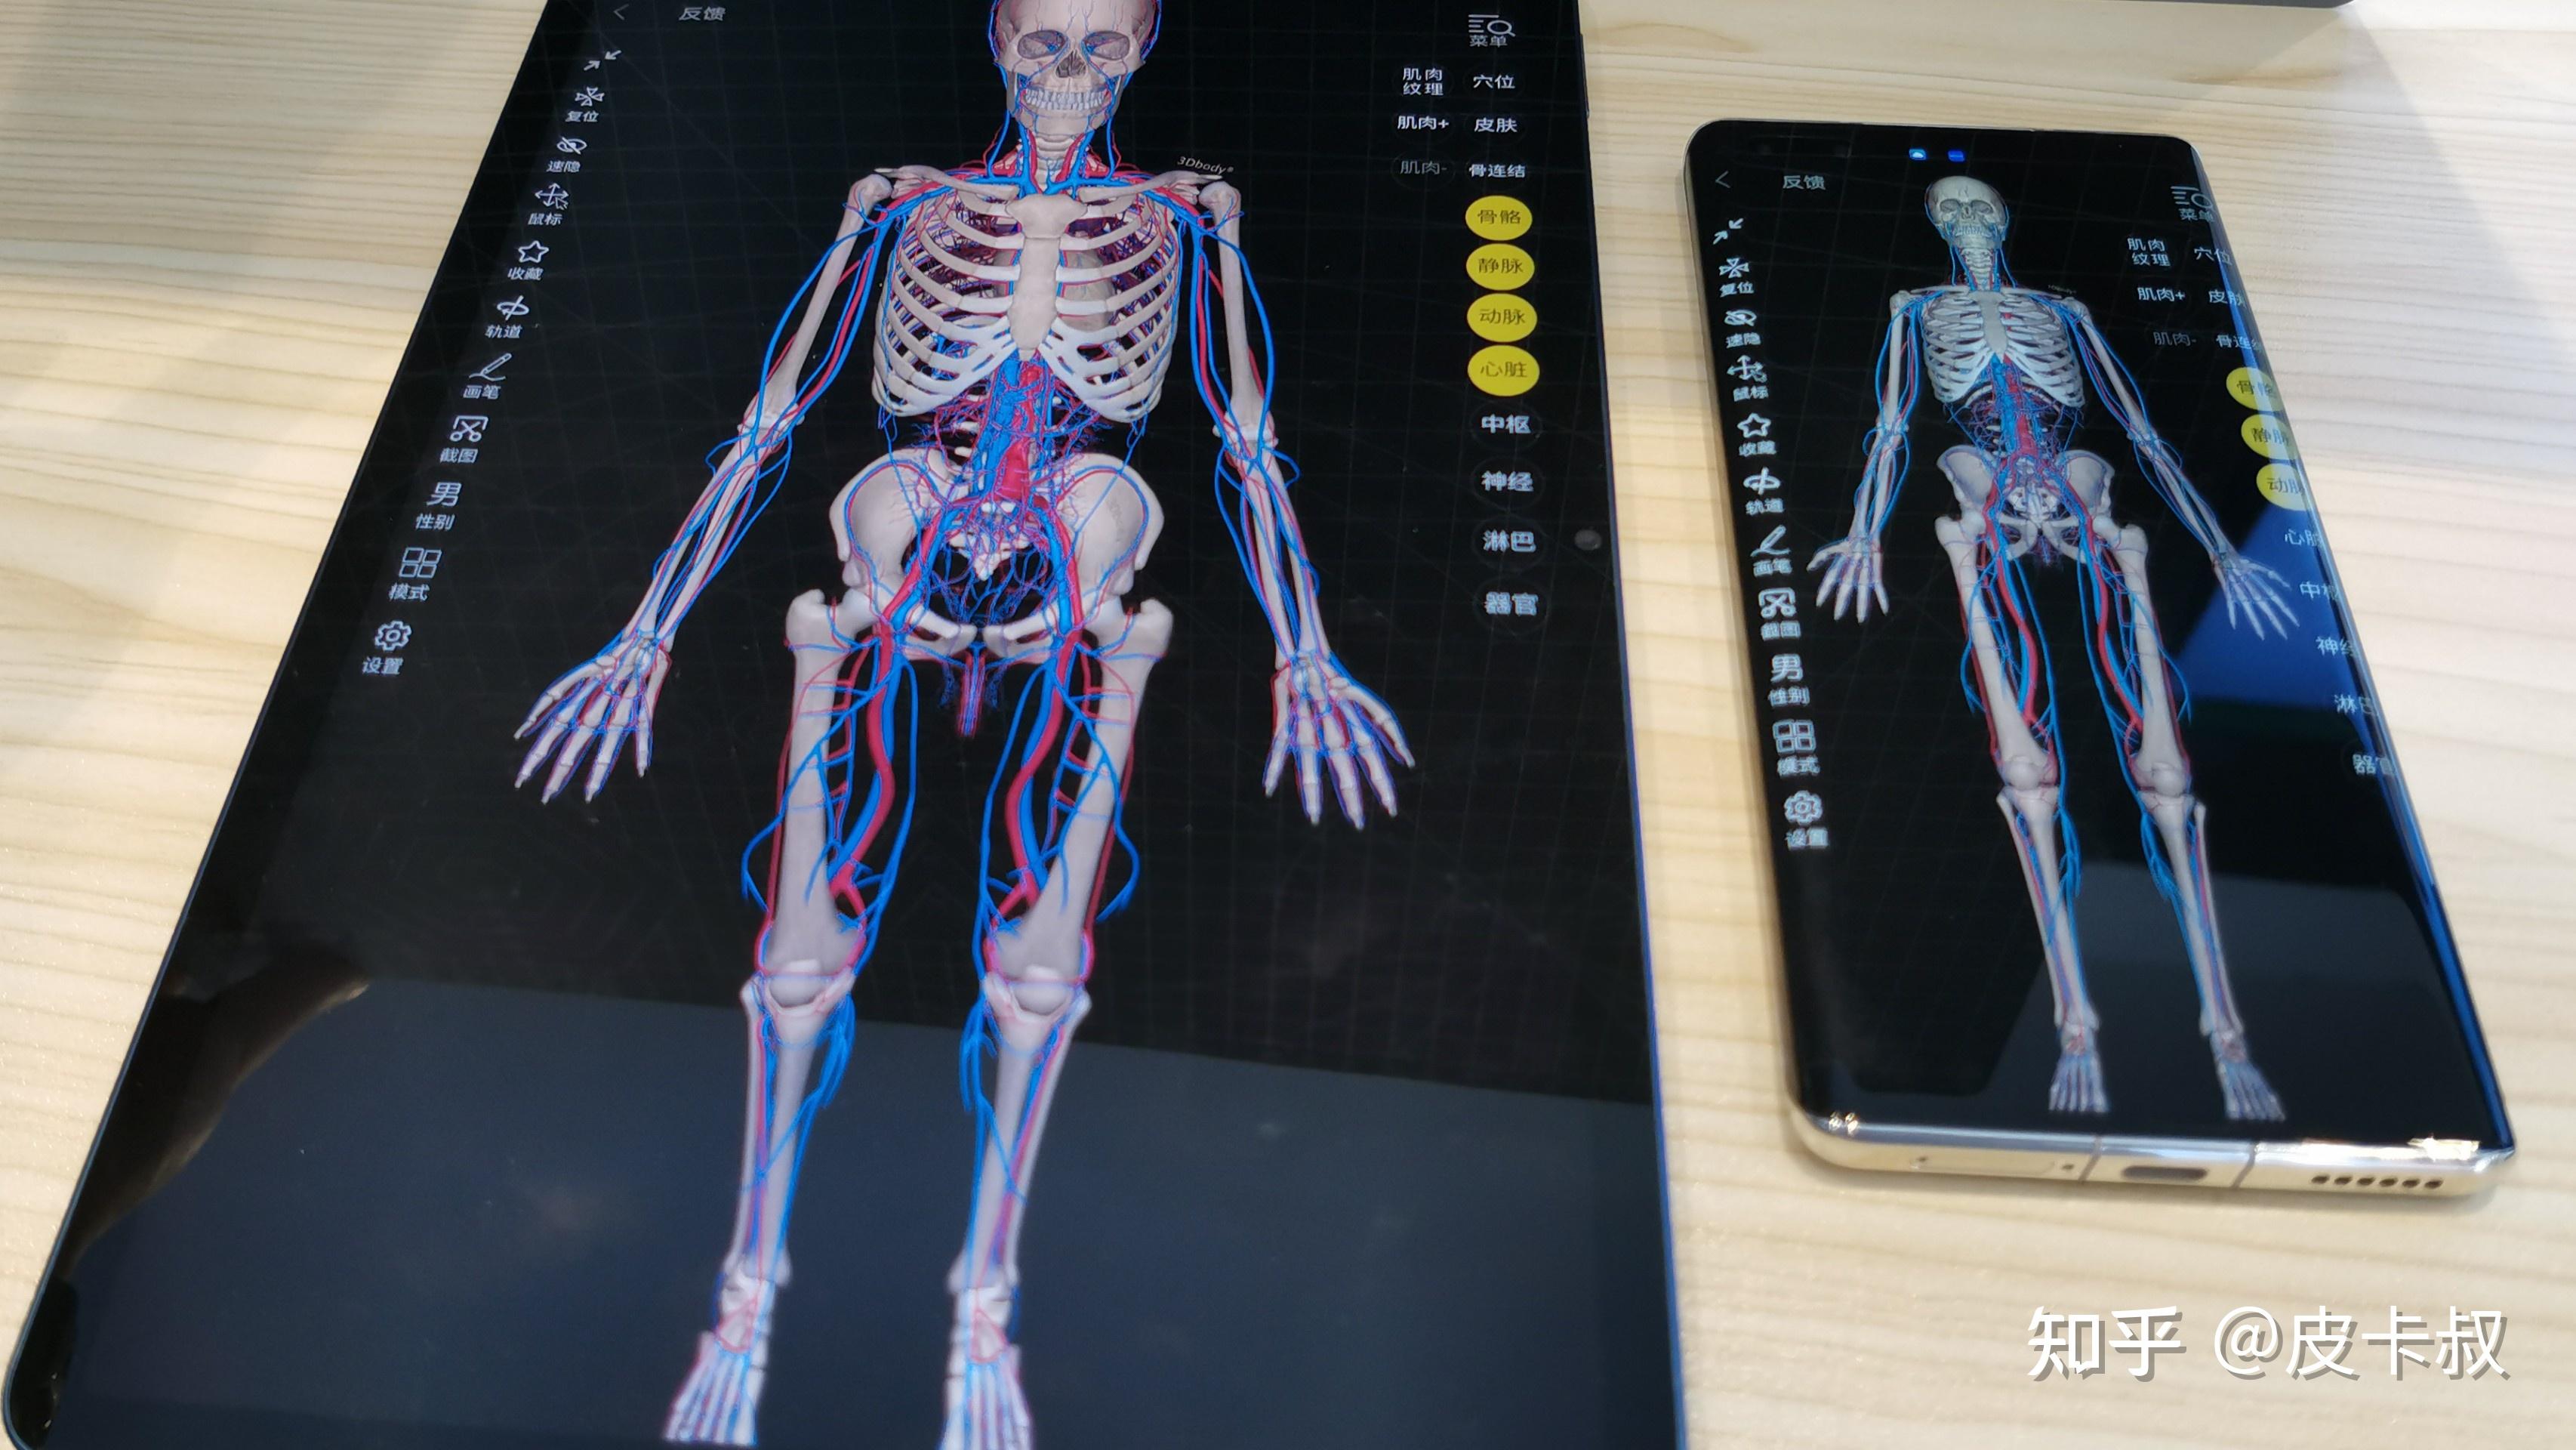 3dbody解剖手机图片